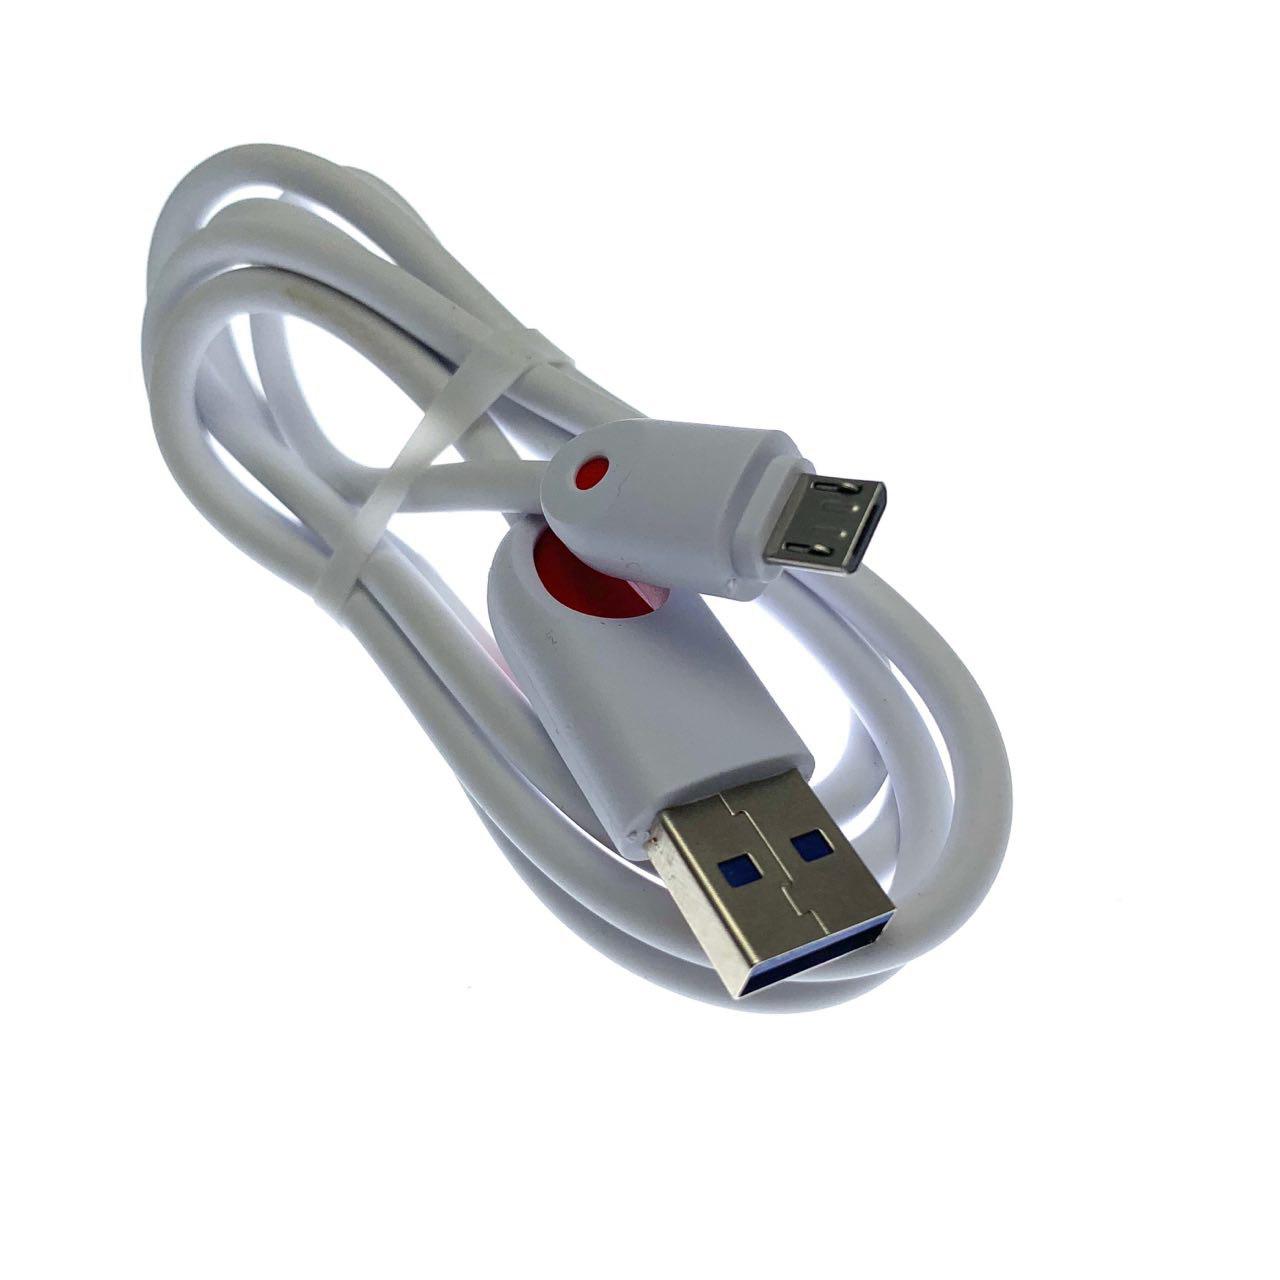 USB Дата-кабель "R15" micro USB силиконовый 1 метр, цвет оболочки белый.